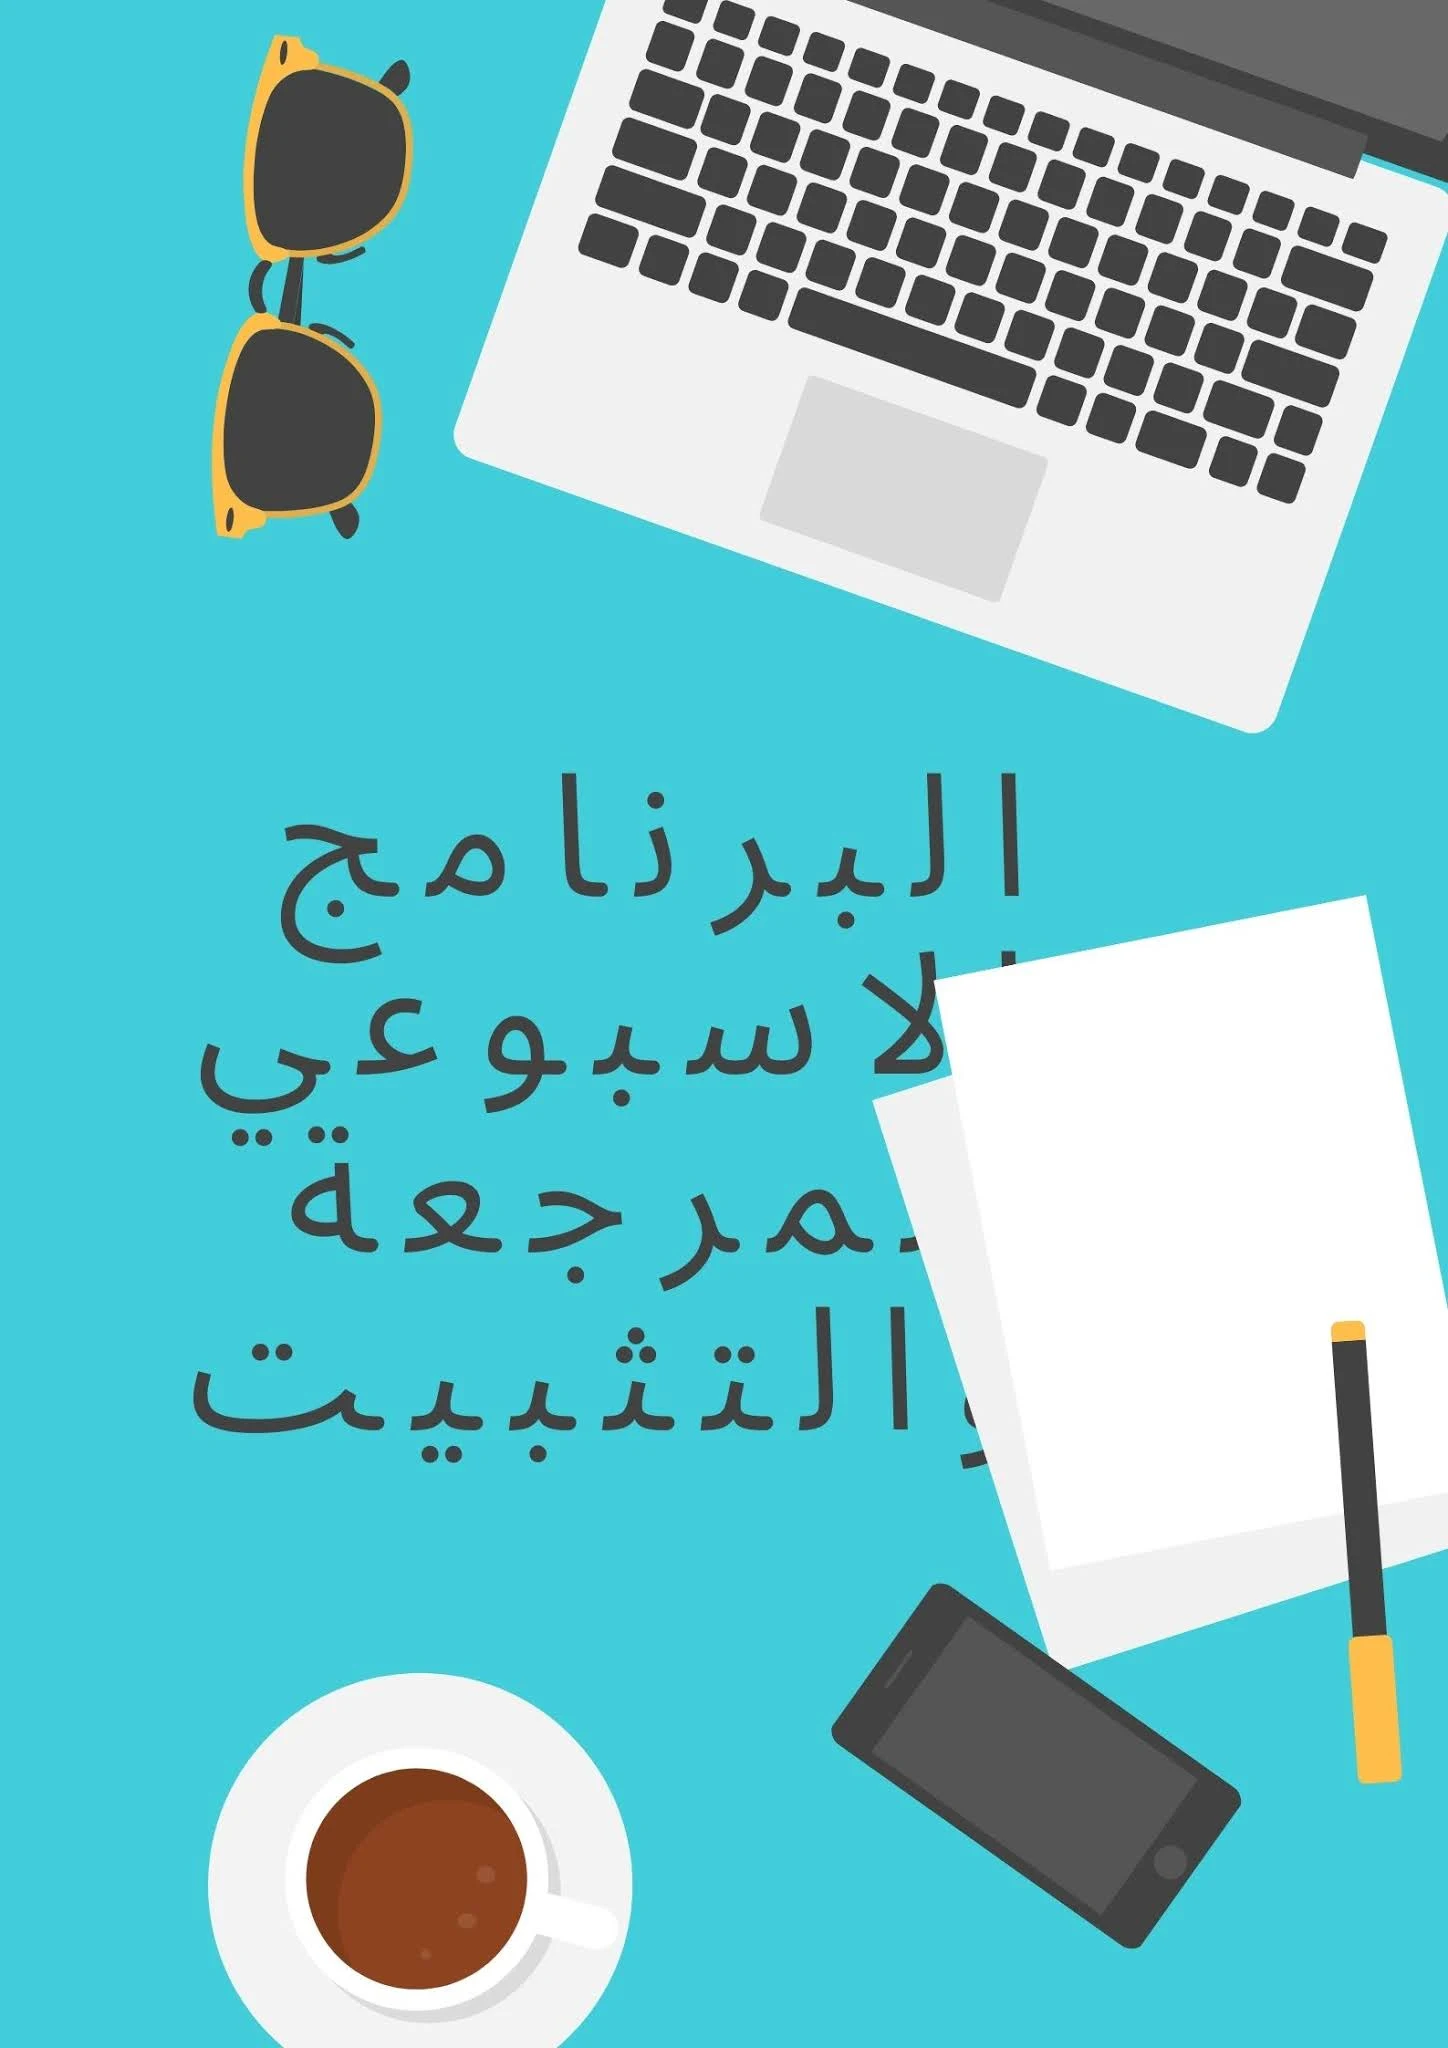 البرنامج الاسبوعي للمراجعة والتثبيت للمستوى الخامس او السادس عربية